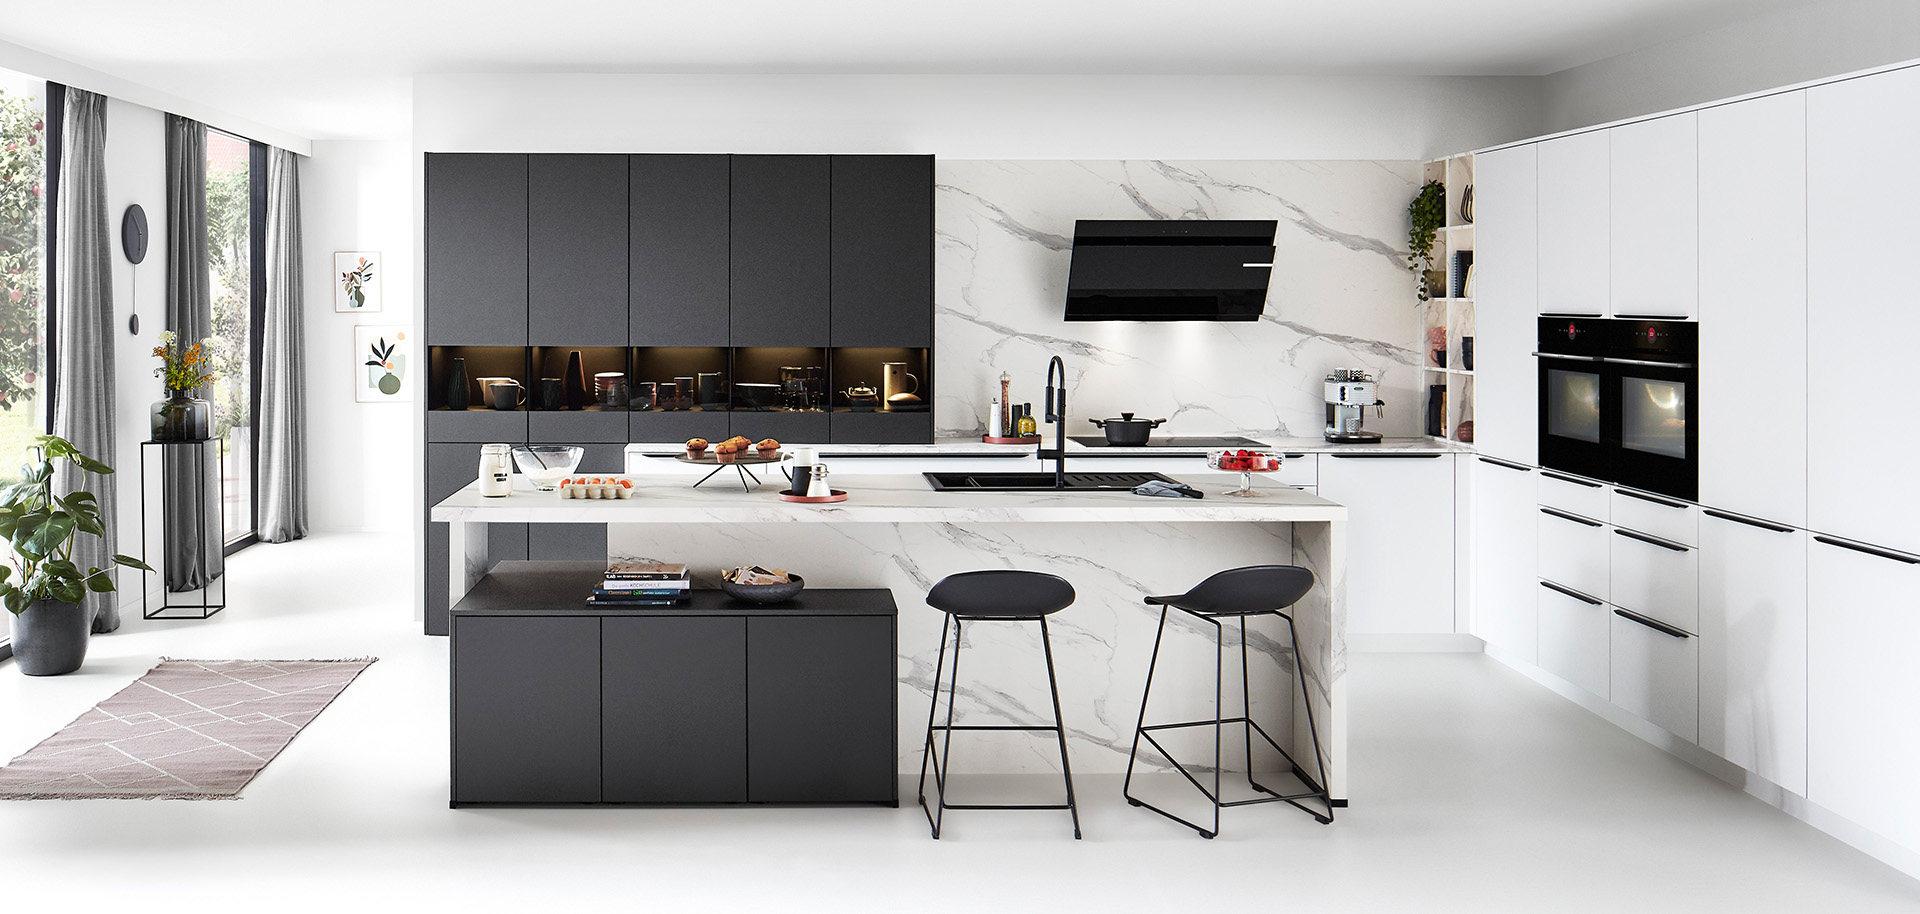 Moderne keuken met strakke lijnen, witte kasten, zwarte accenten, marmeren achterwand, geïntegreerde apparaten en een centraal eiland met barkrukken.